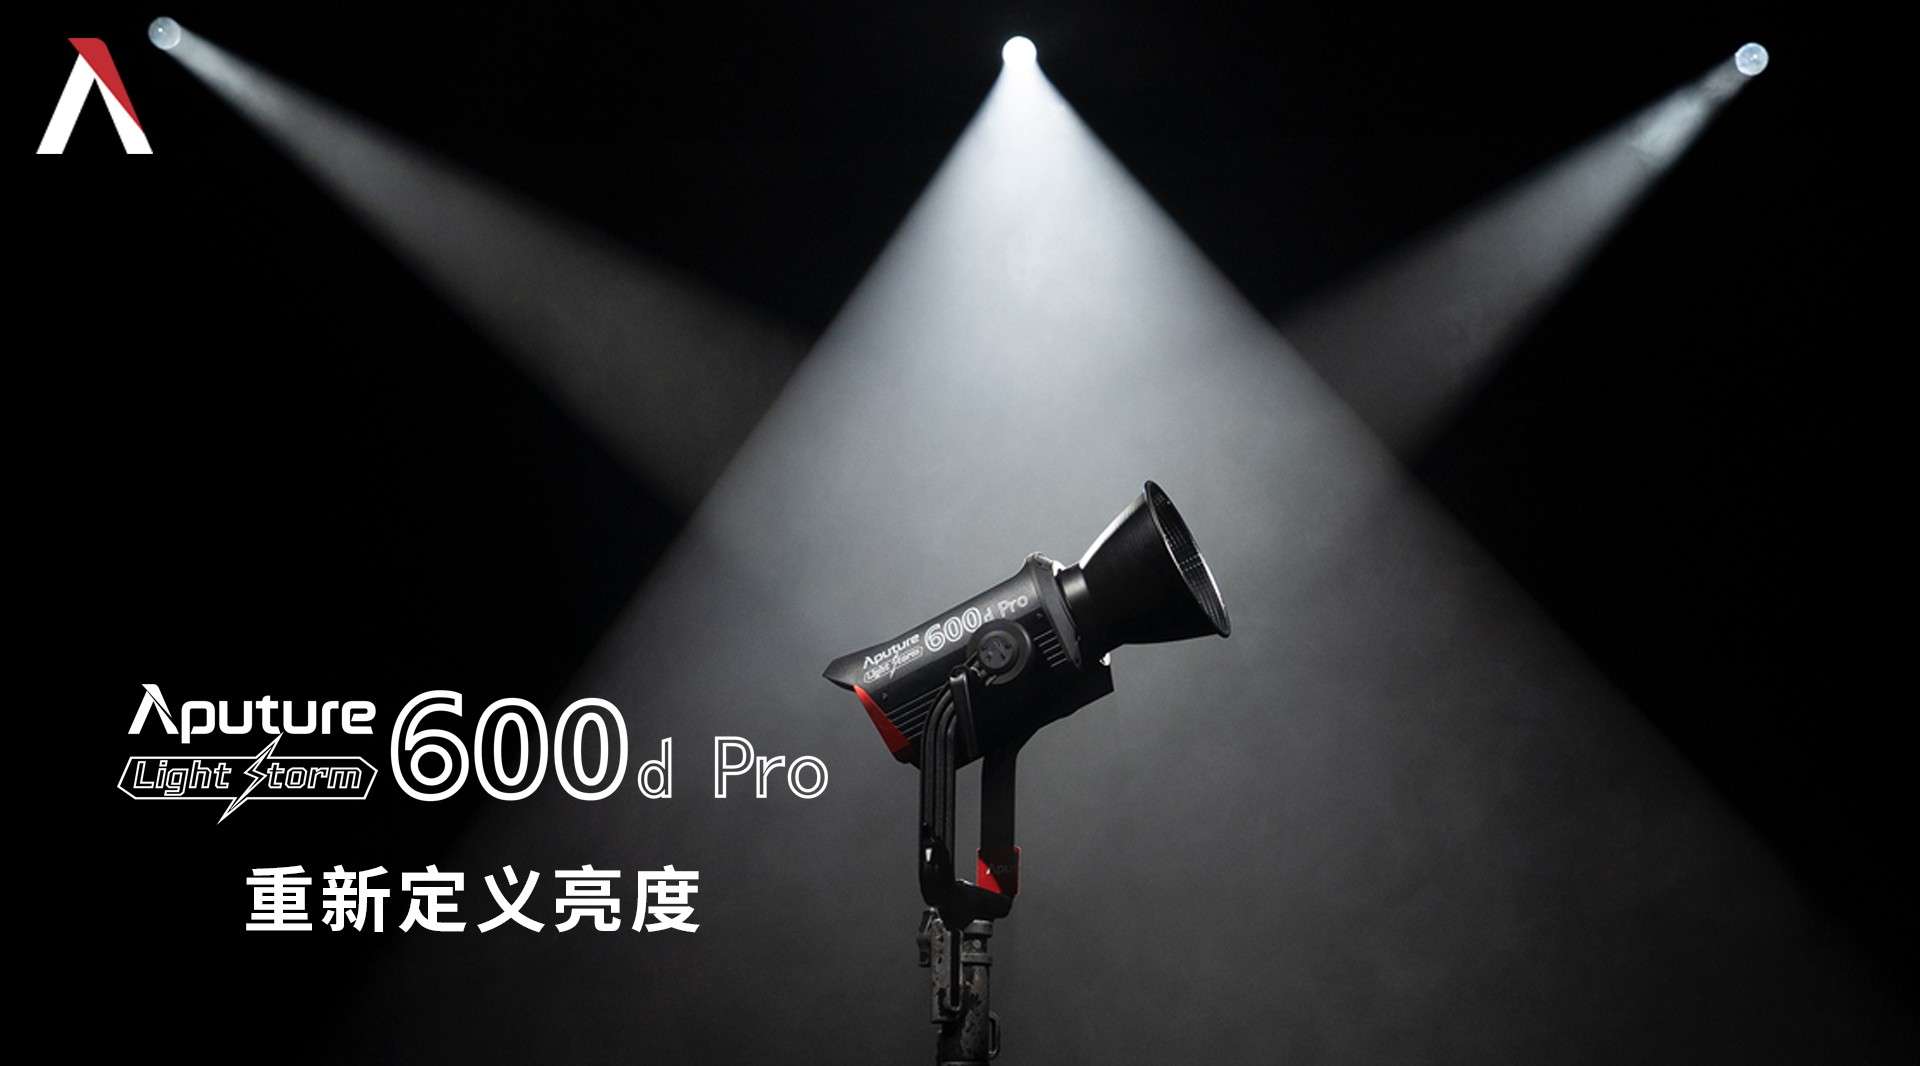 【Aputure爱图仕】LS 600d Pro，专业强大，颠覆以往。